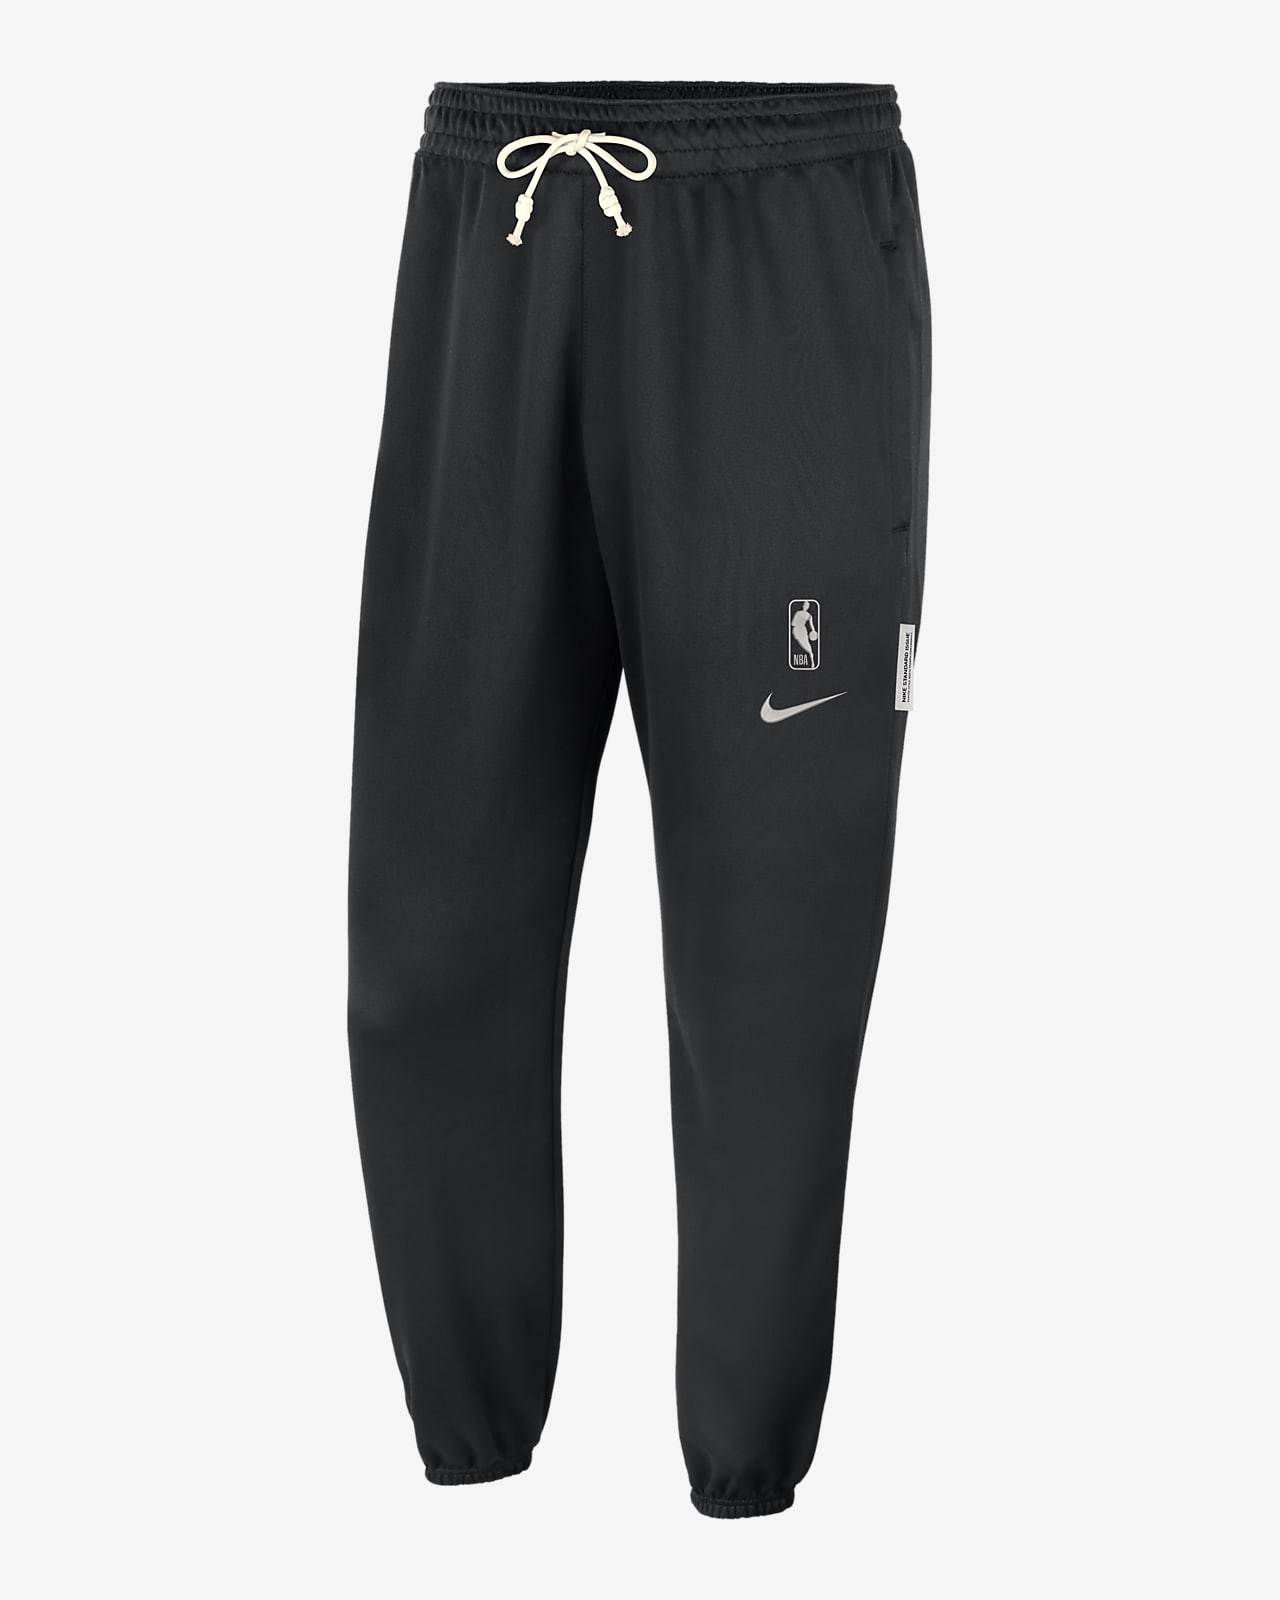 Nike Dri-FIT Men's Pants - Black/White